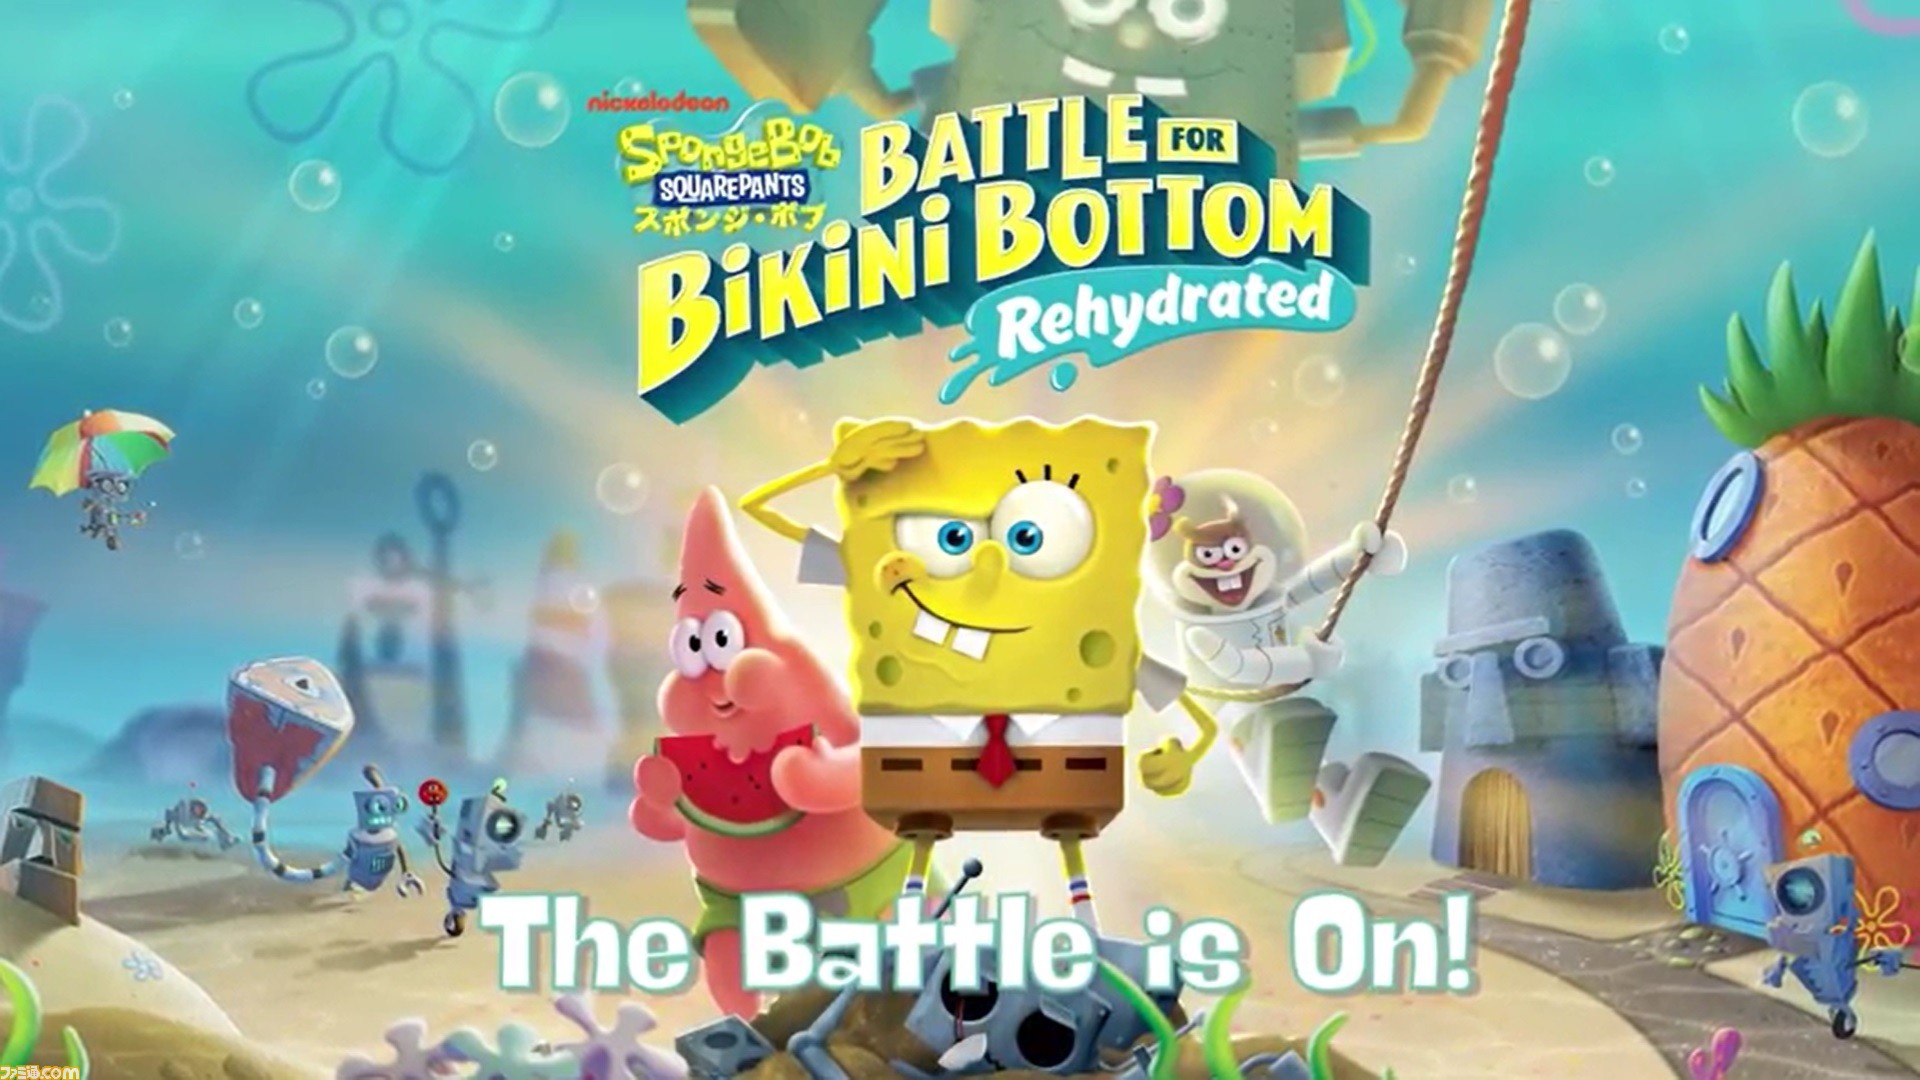 スポンジ ボブ Battle For Bikini Bottom Rehydrated 本日発売 アニメと同じ声優による日本語吹き替えで楽しめる ゲーム エンタメ最新情報のファミ通 Com